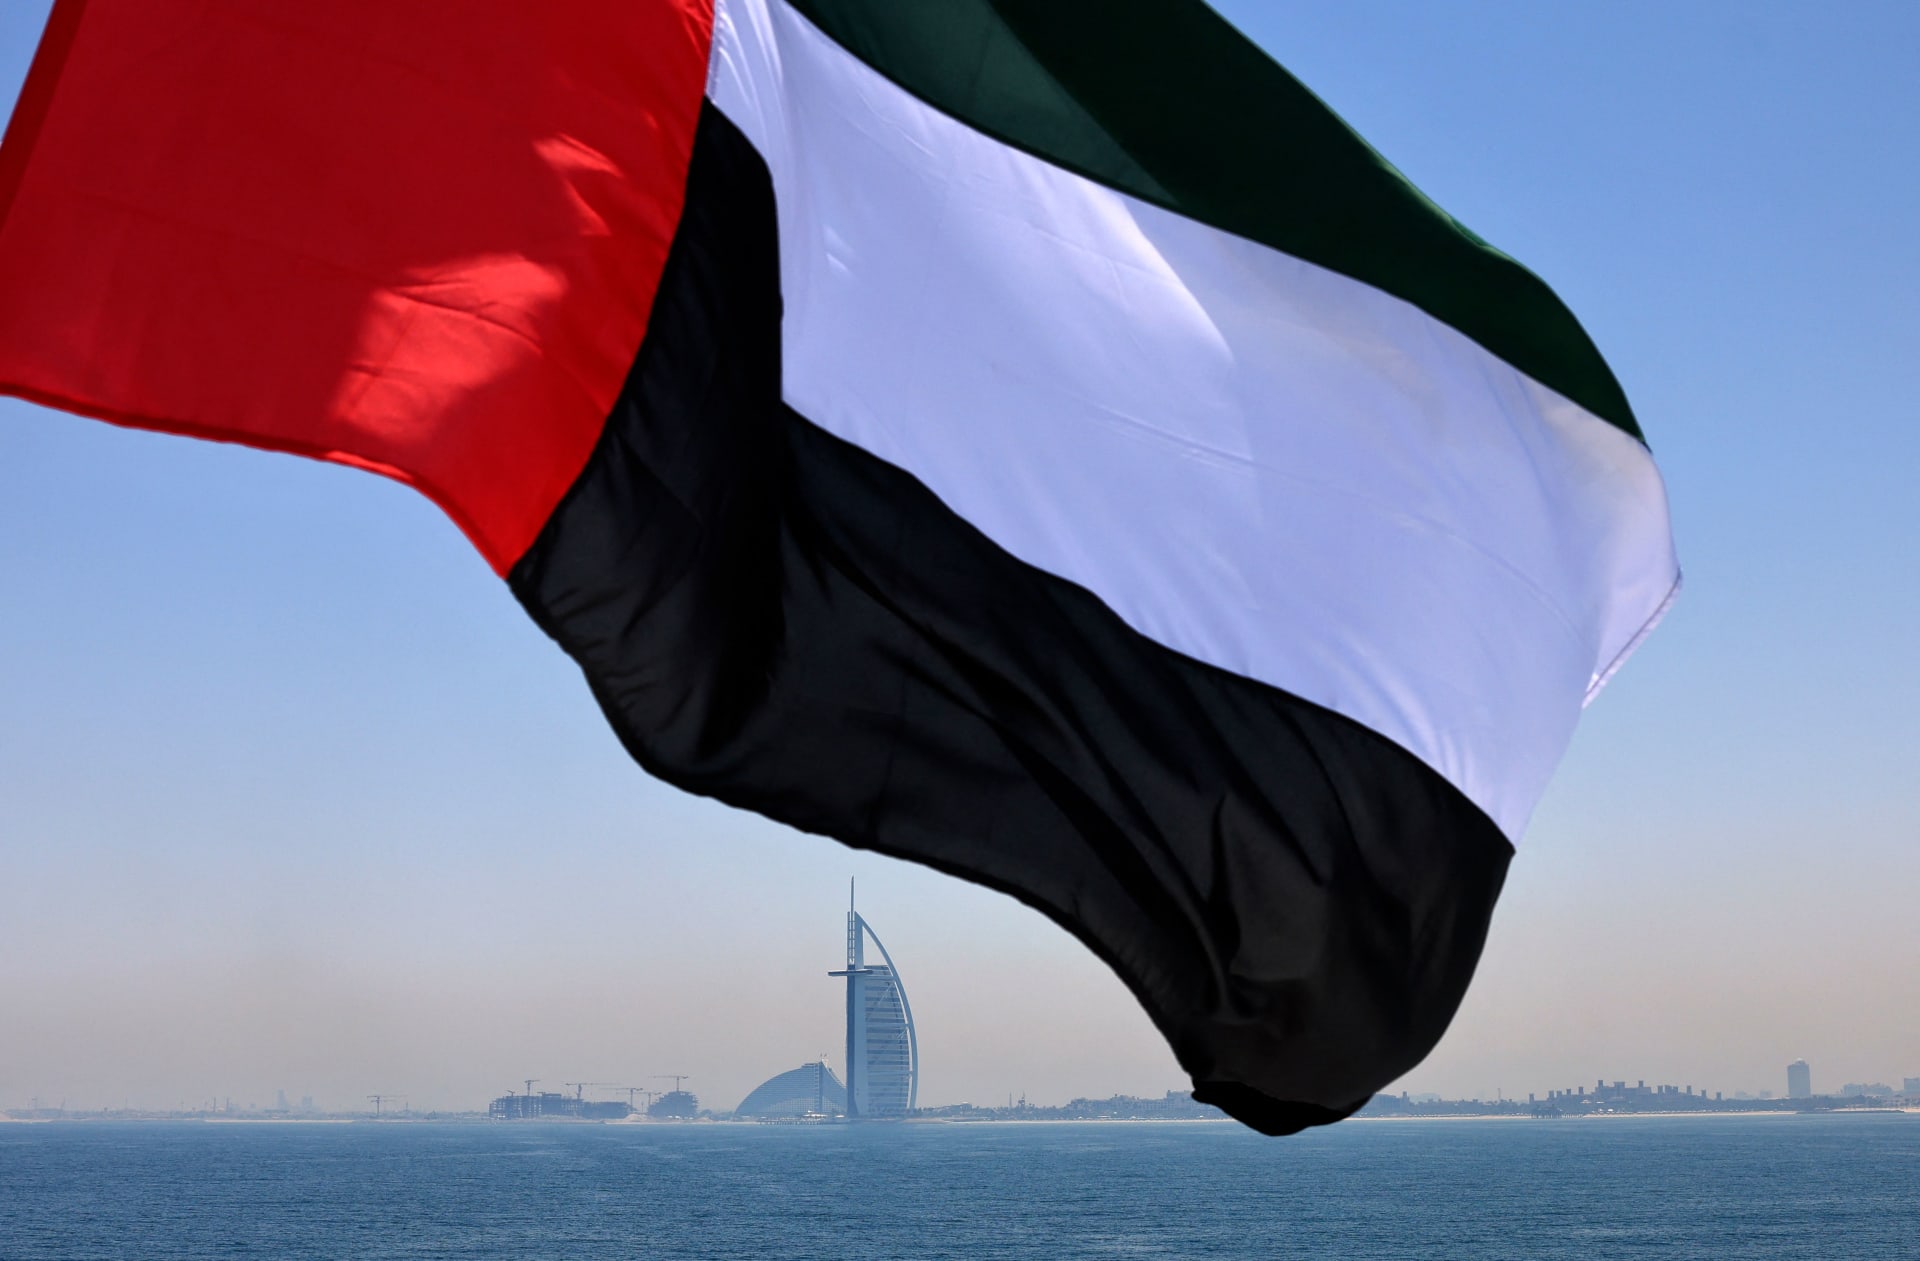 علم الإمارات يرفرف فوق مرسى دبي مع فندق برج العرب في الخلفية - في 3 يونيو 2021